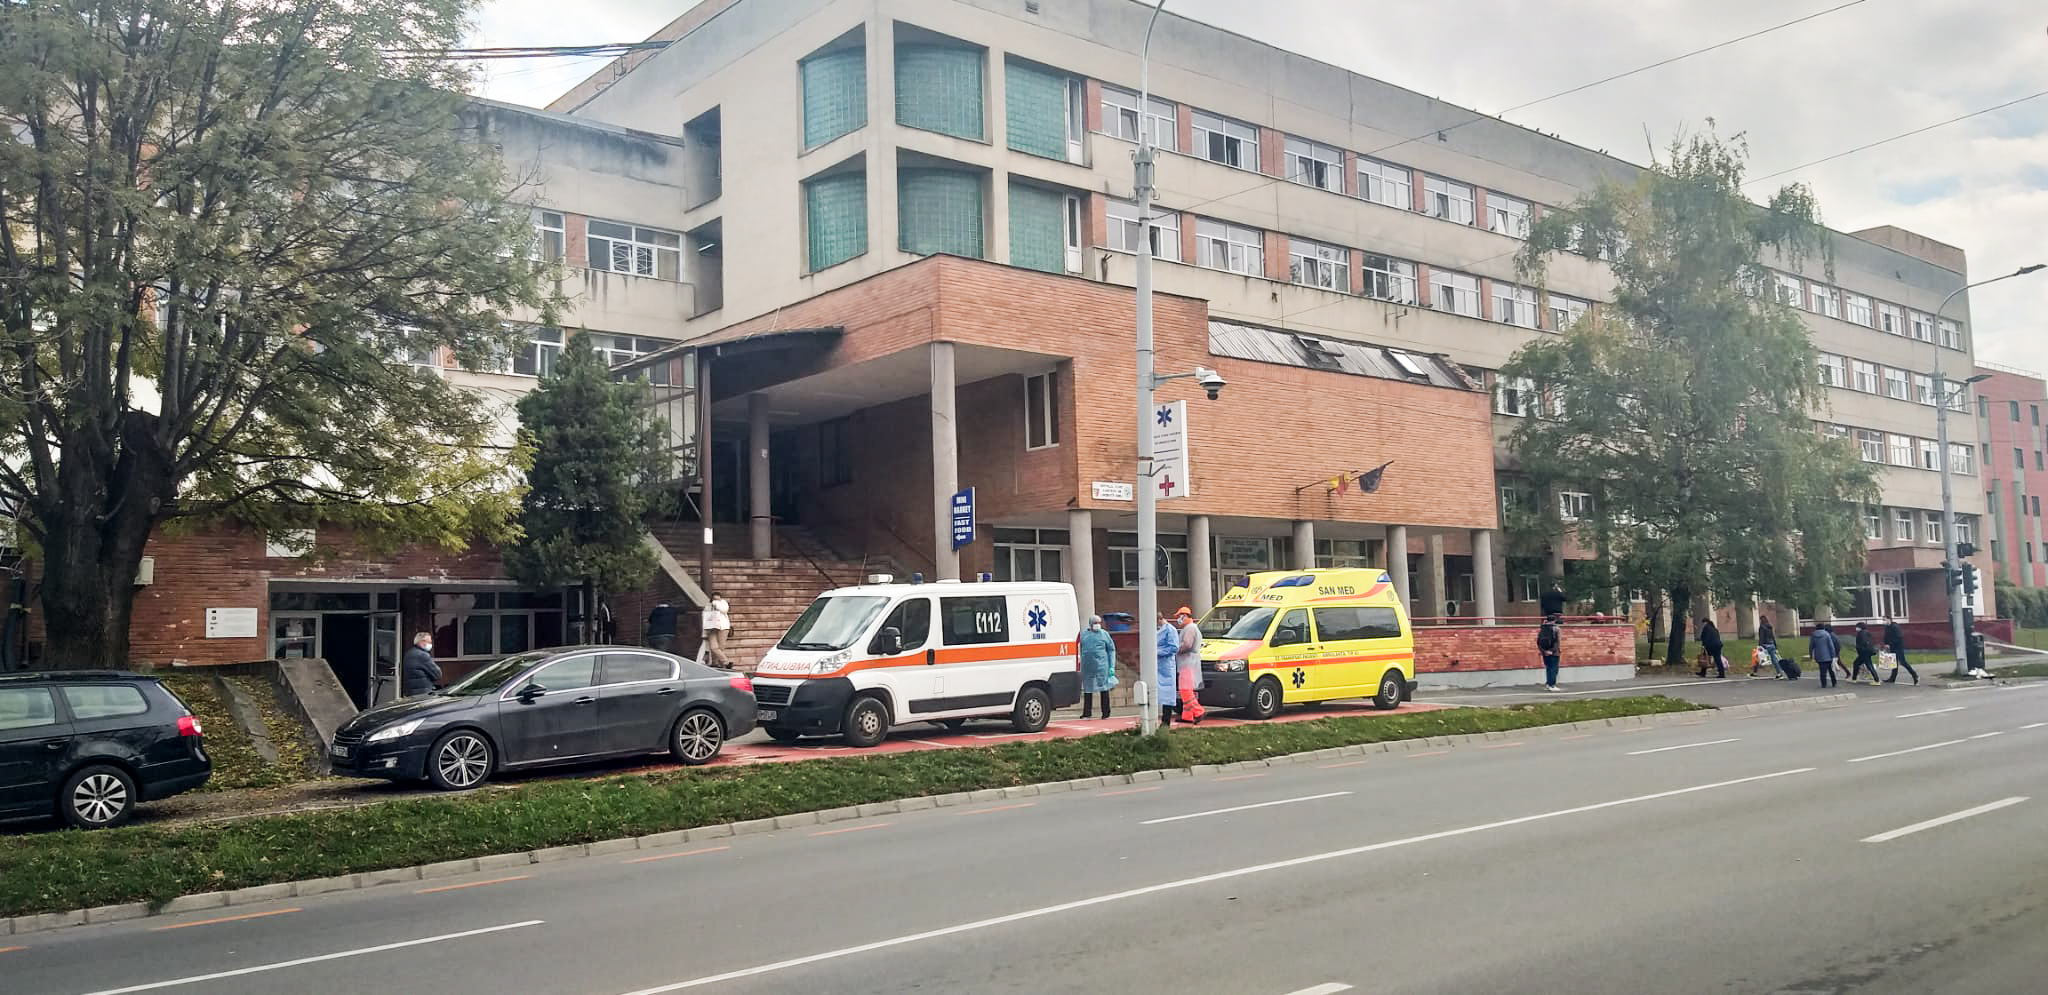 Spitalul Judeţean Sibiu face angajări. Peste 70 de posturi disponibile